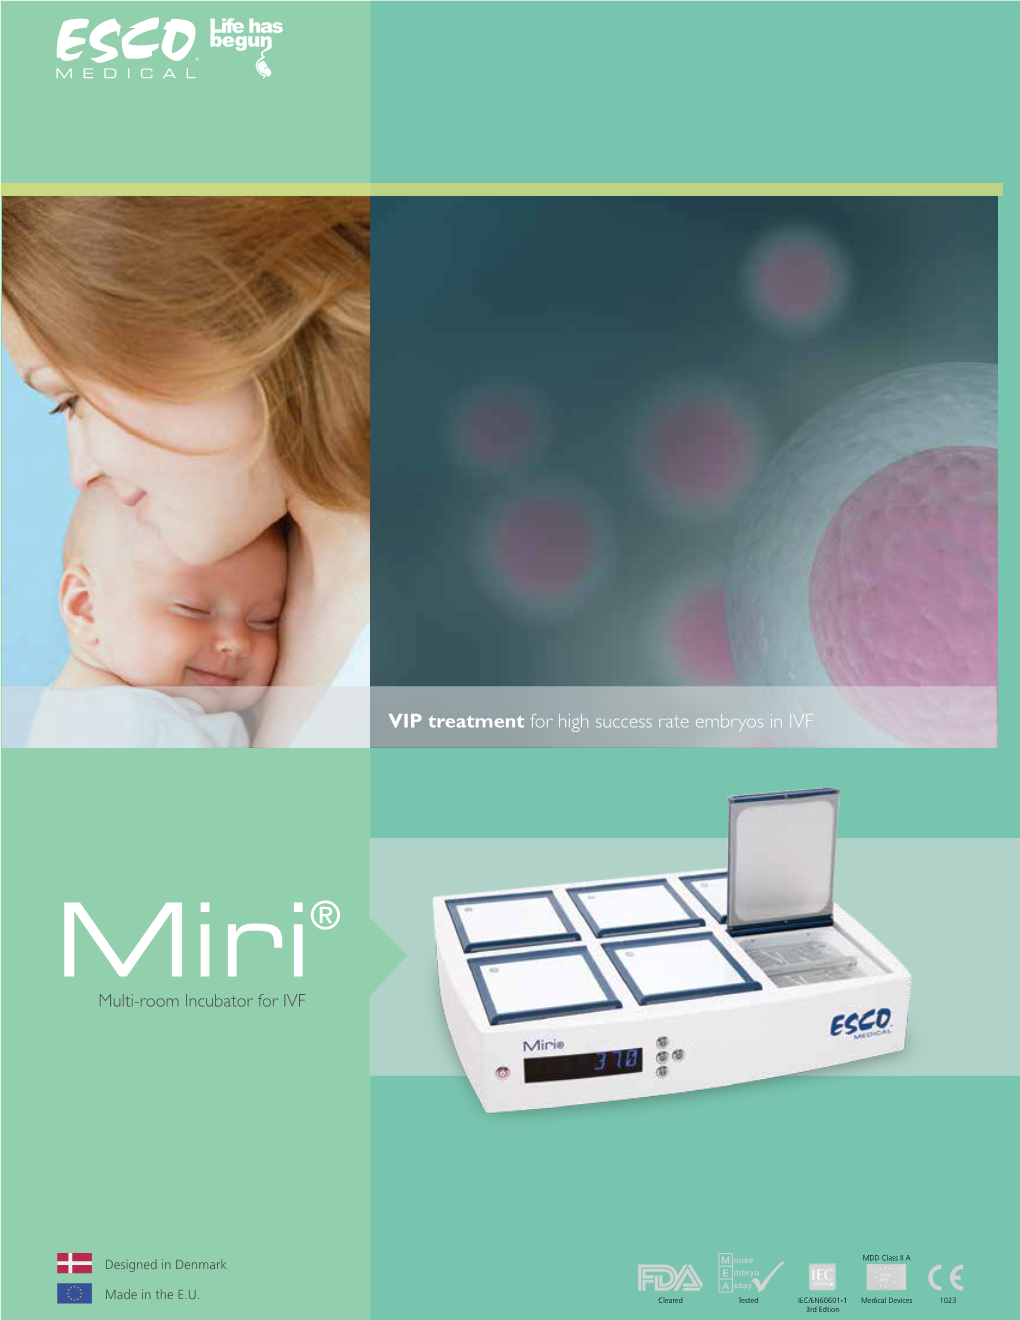 Miri® Multi-Room Incubator for IVF